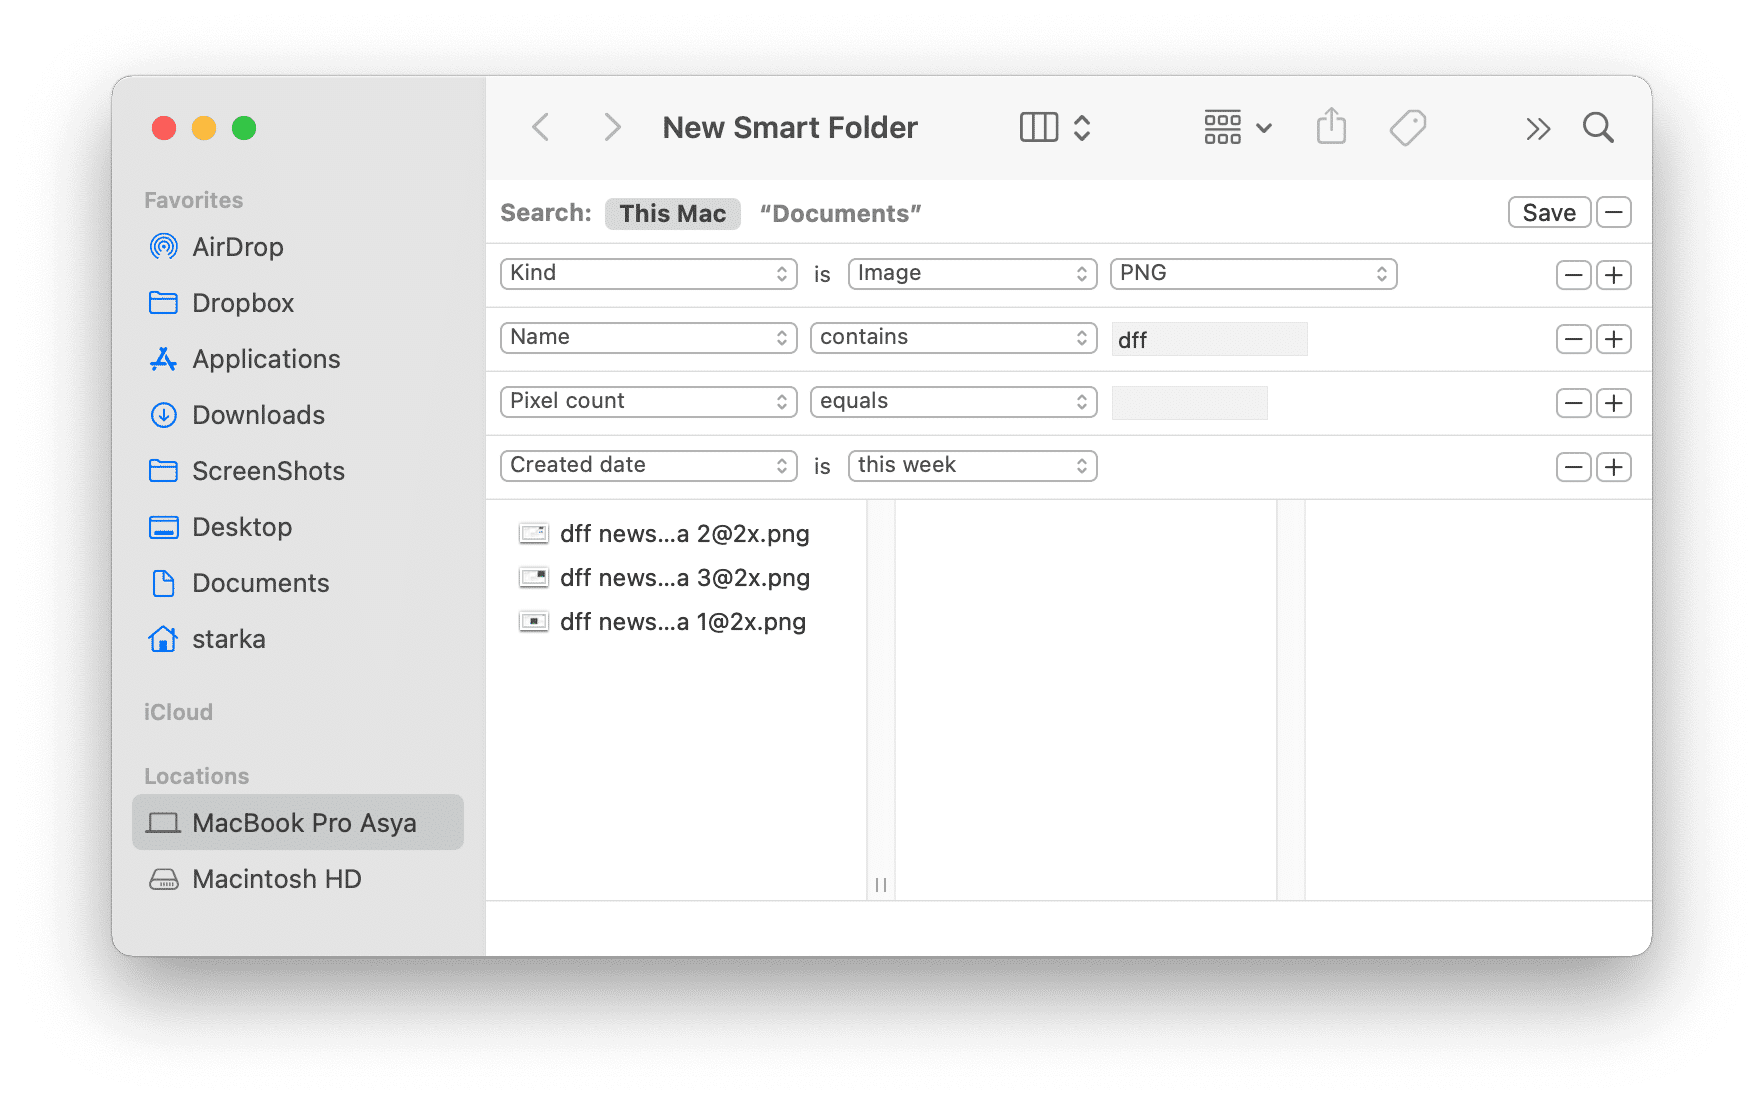 New Smart Folder filters in Finder